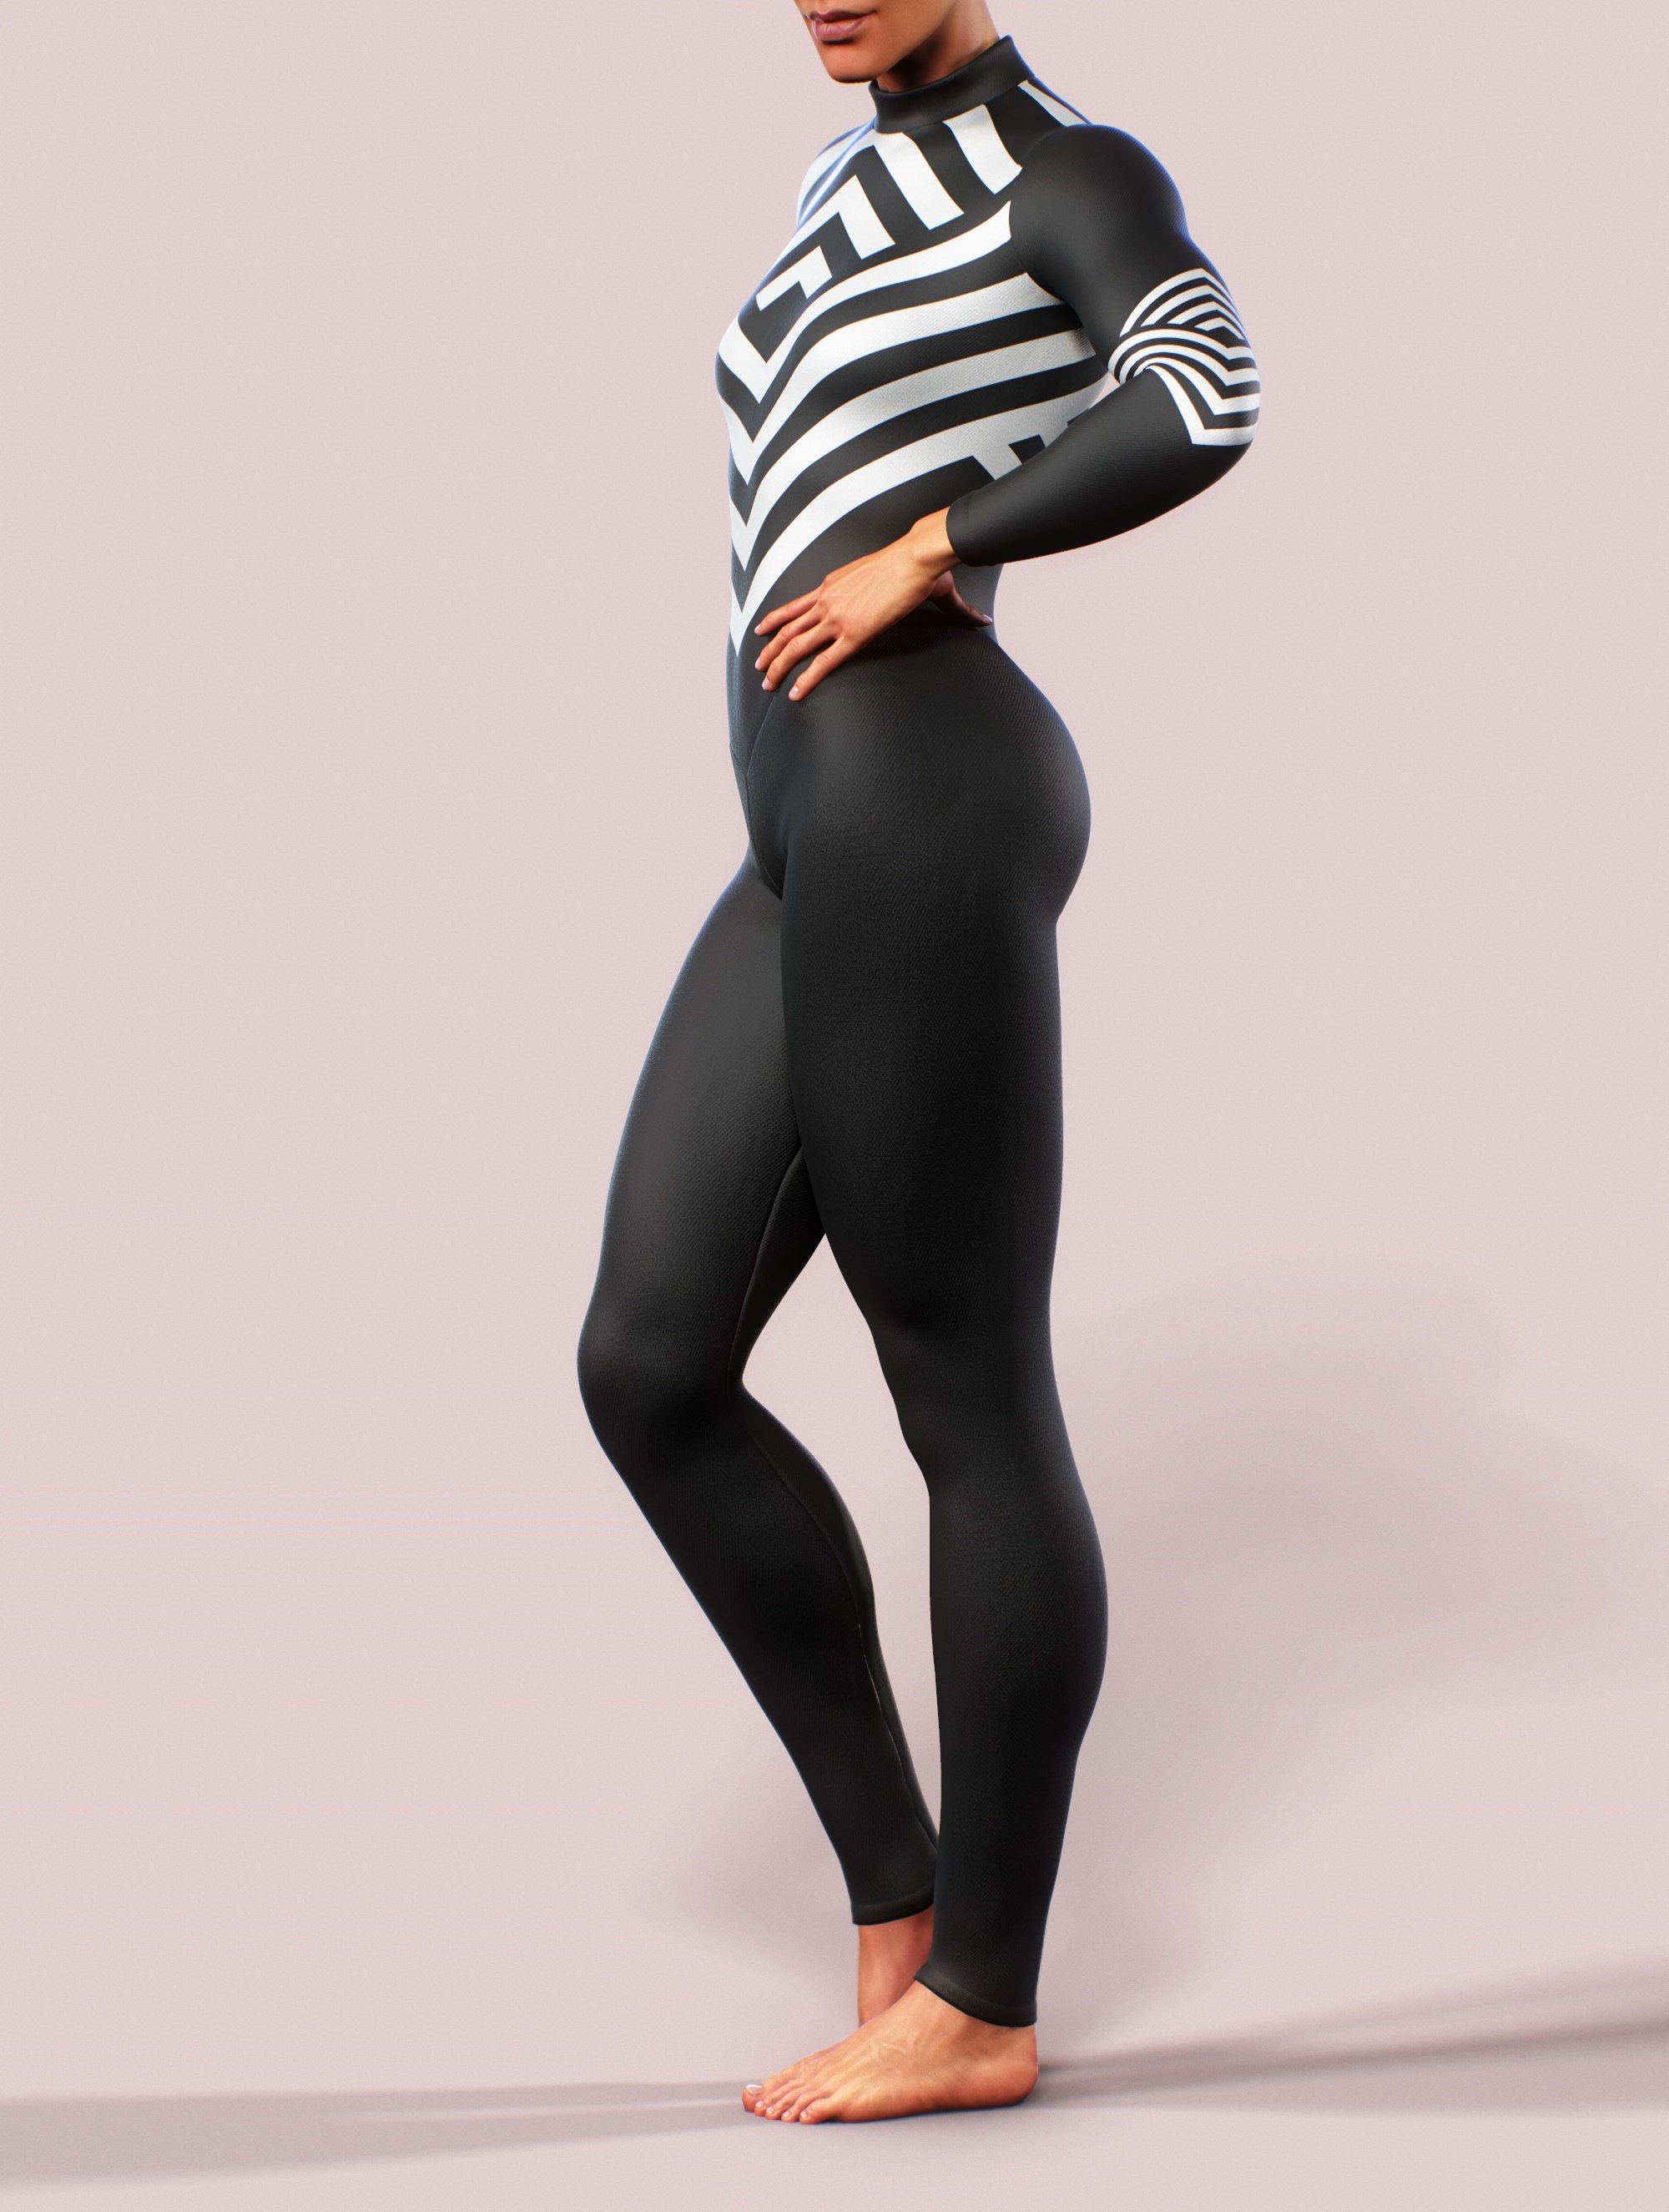 Women's Black Bodysuit Practice Top with Illusion Neckline, Large Flow –  Jeravae